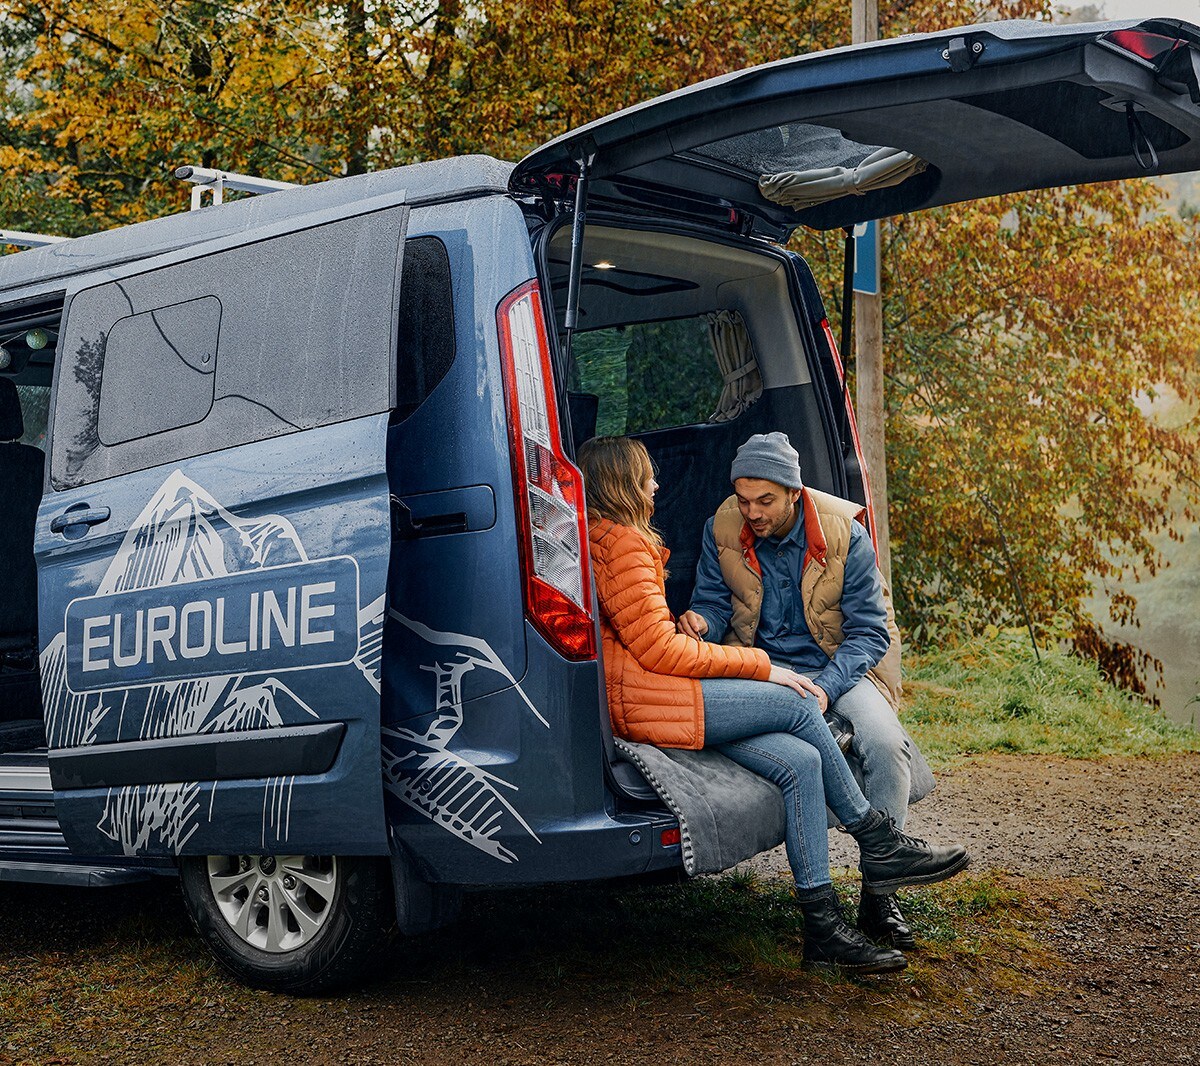 Ford Tourneo Custom Euroline in Blau in der Heckansicht mit geöffneter Tür.